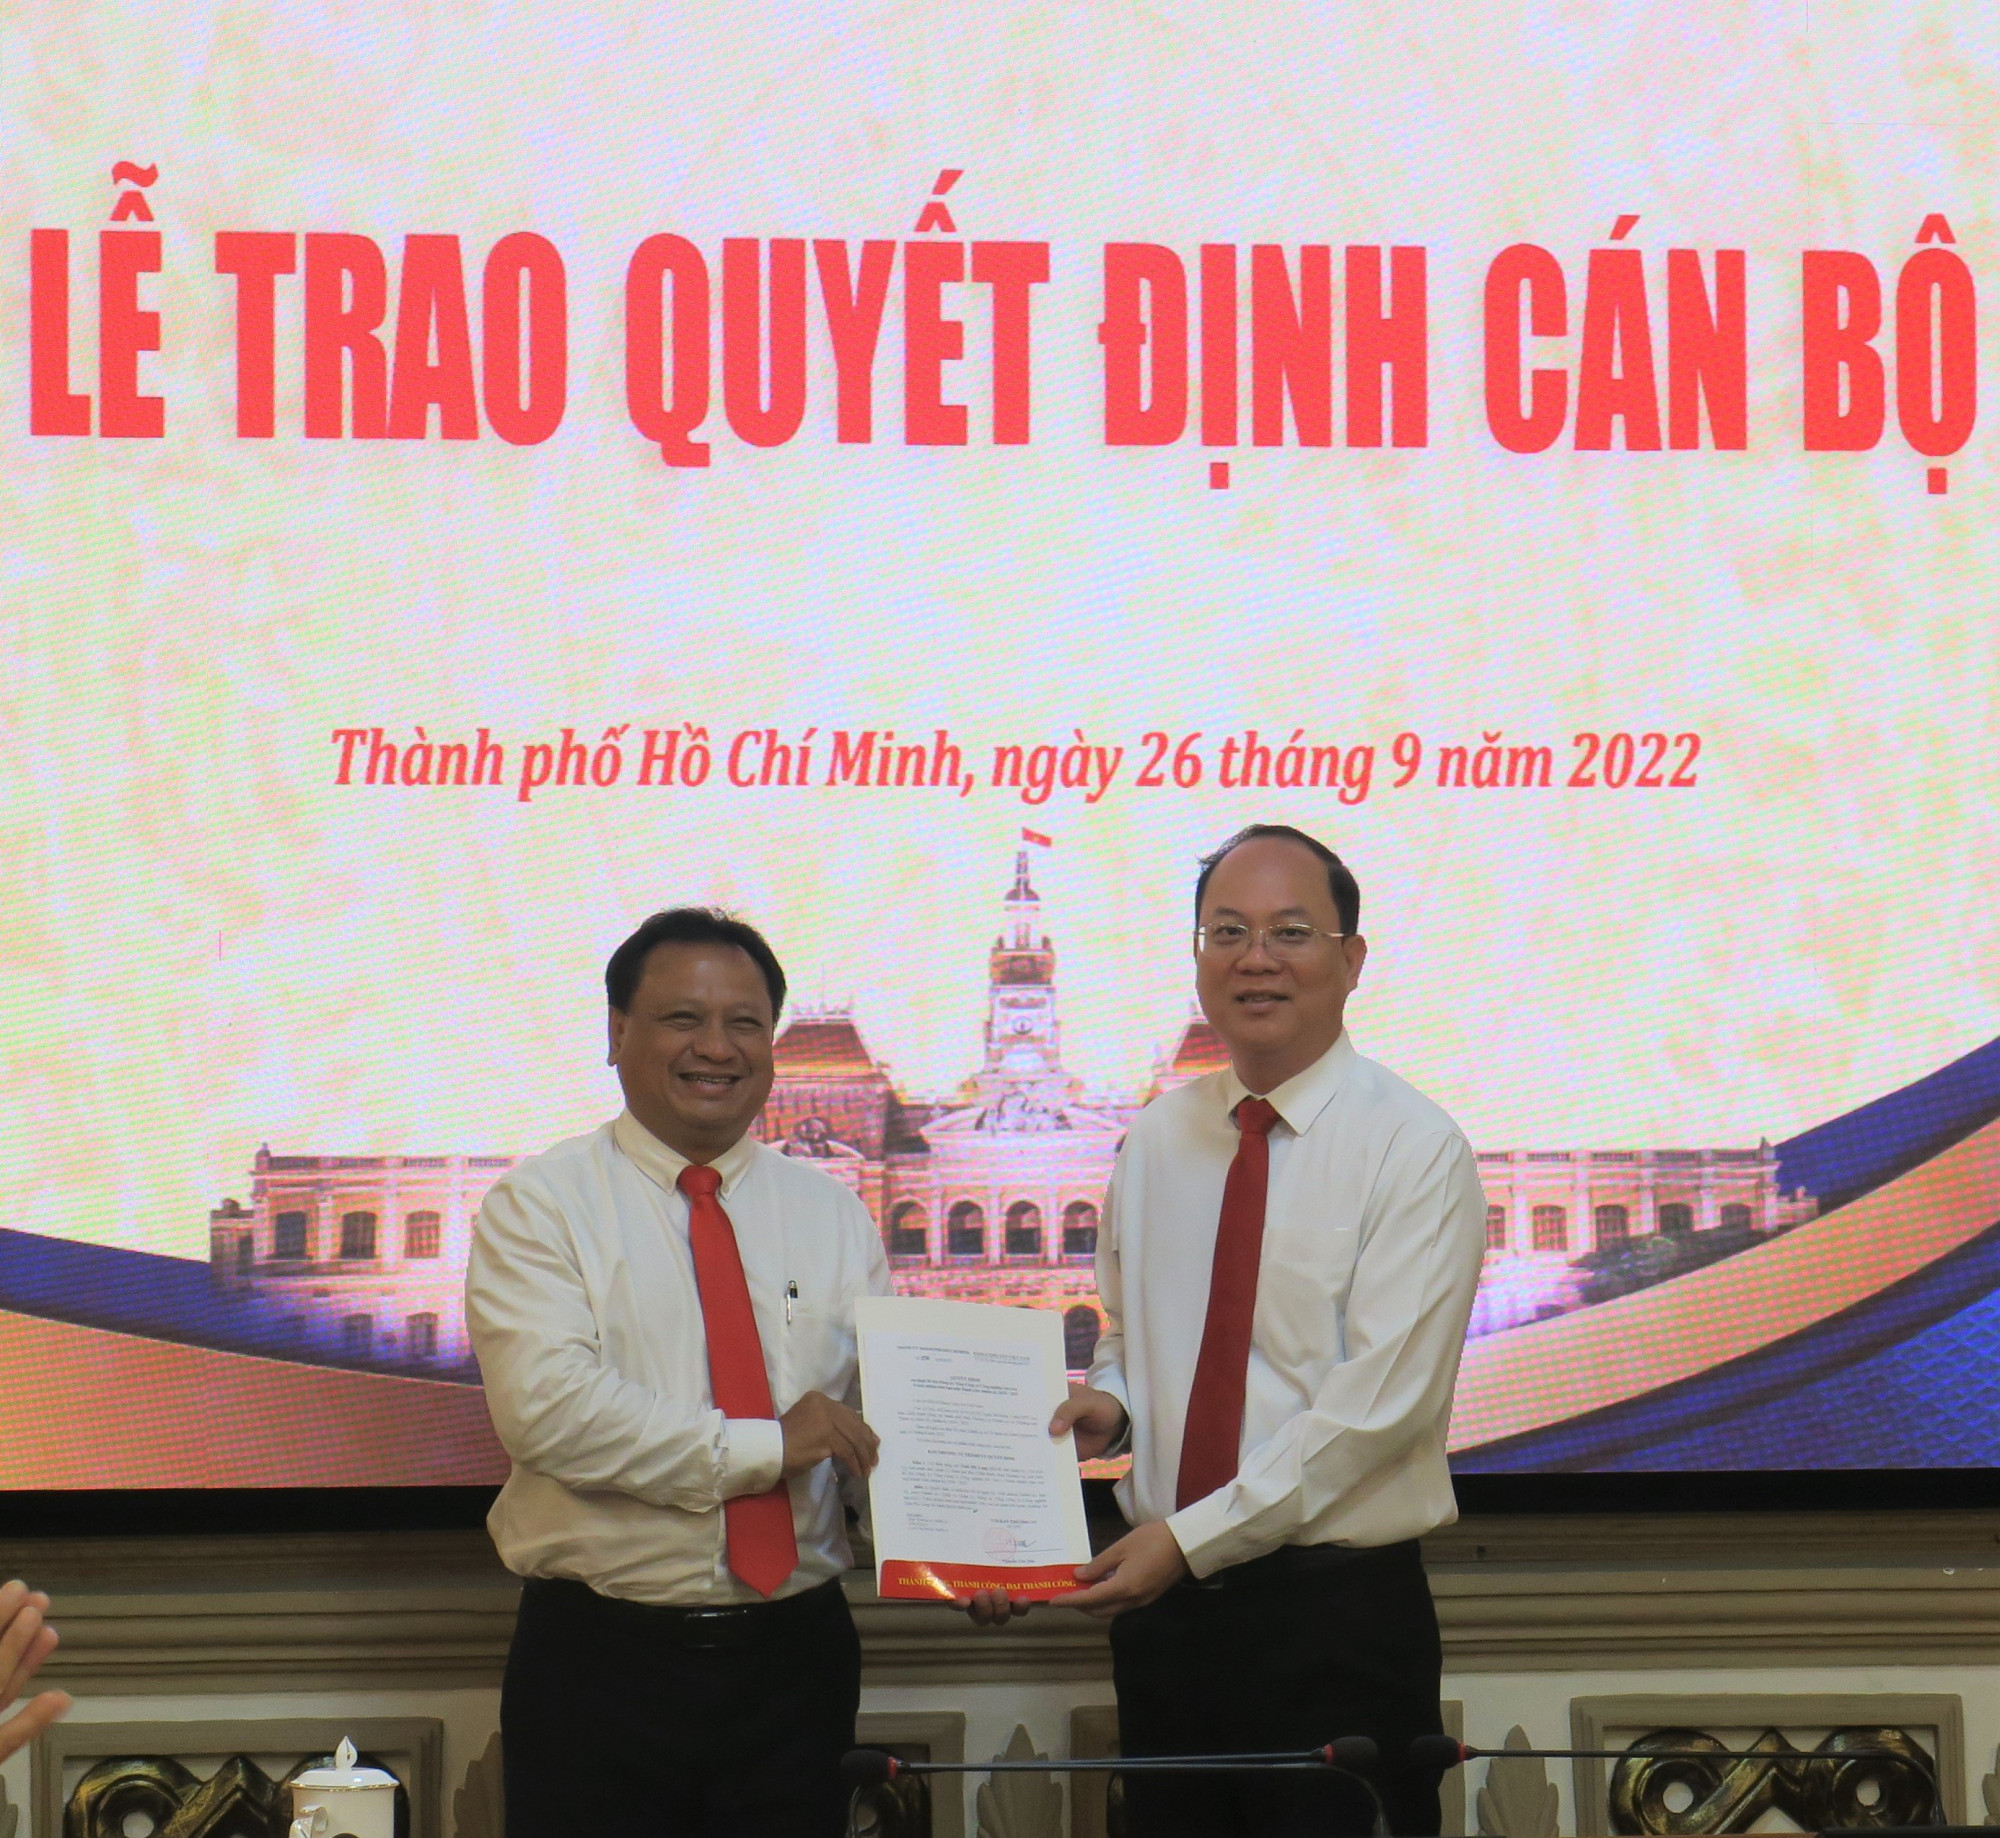 Đồng chí Nguyễn Hồ Hải trao quyết định cho đồng chí Trần Phi Long